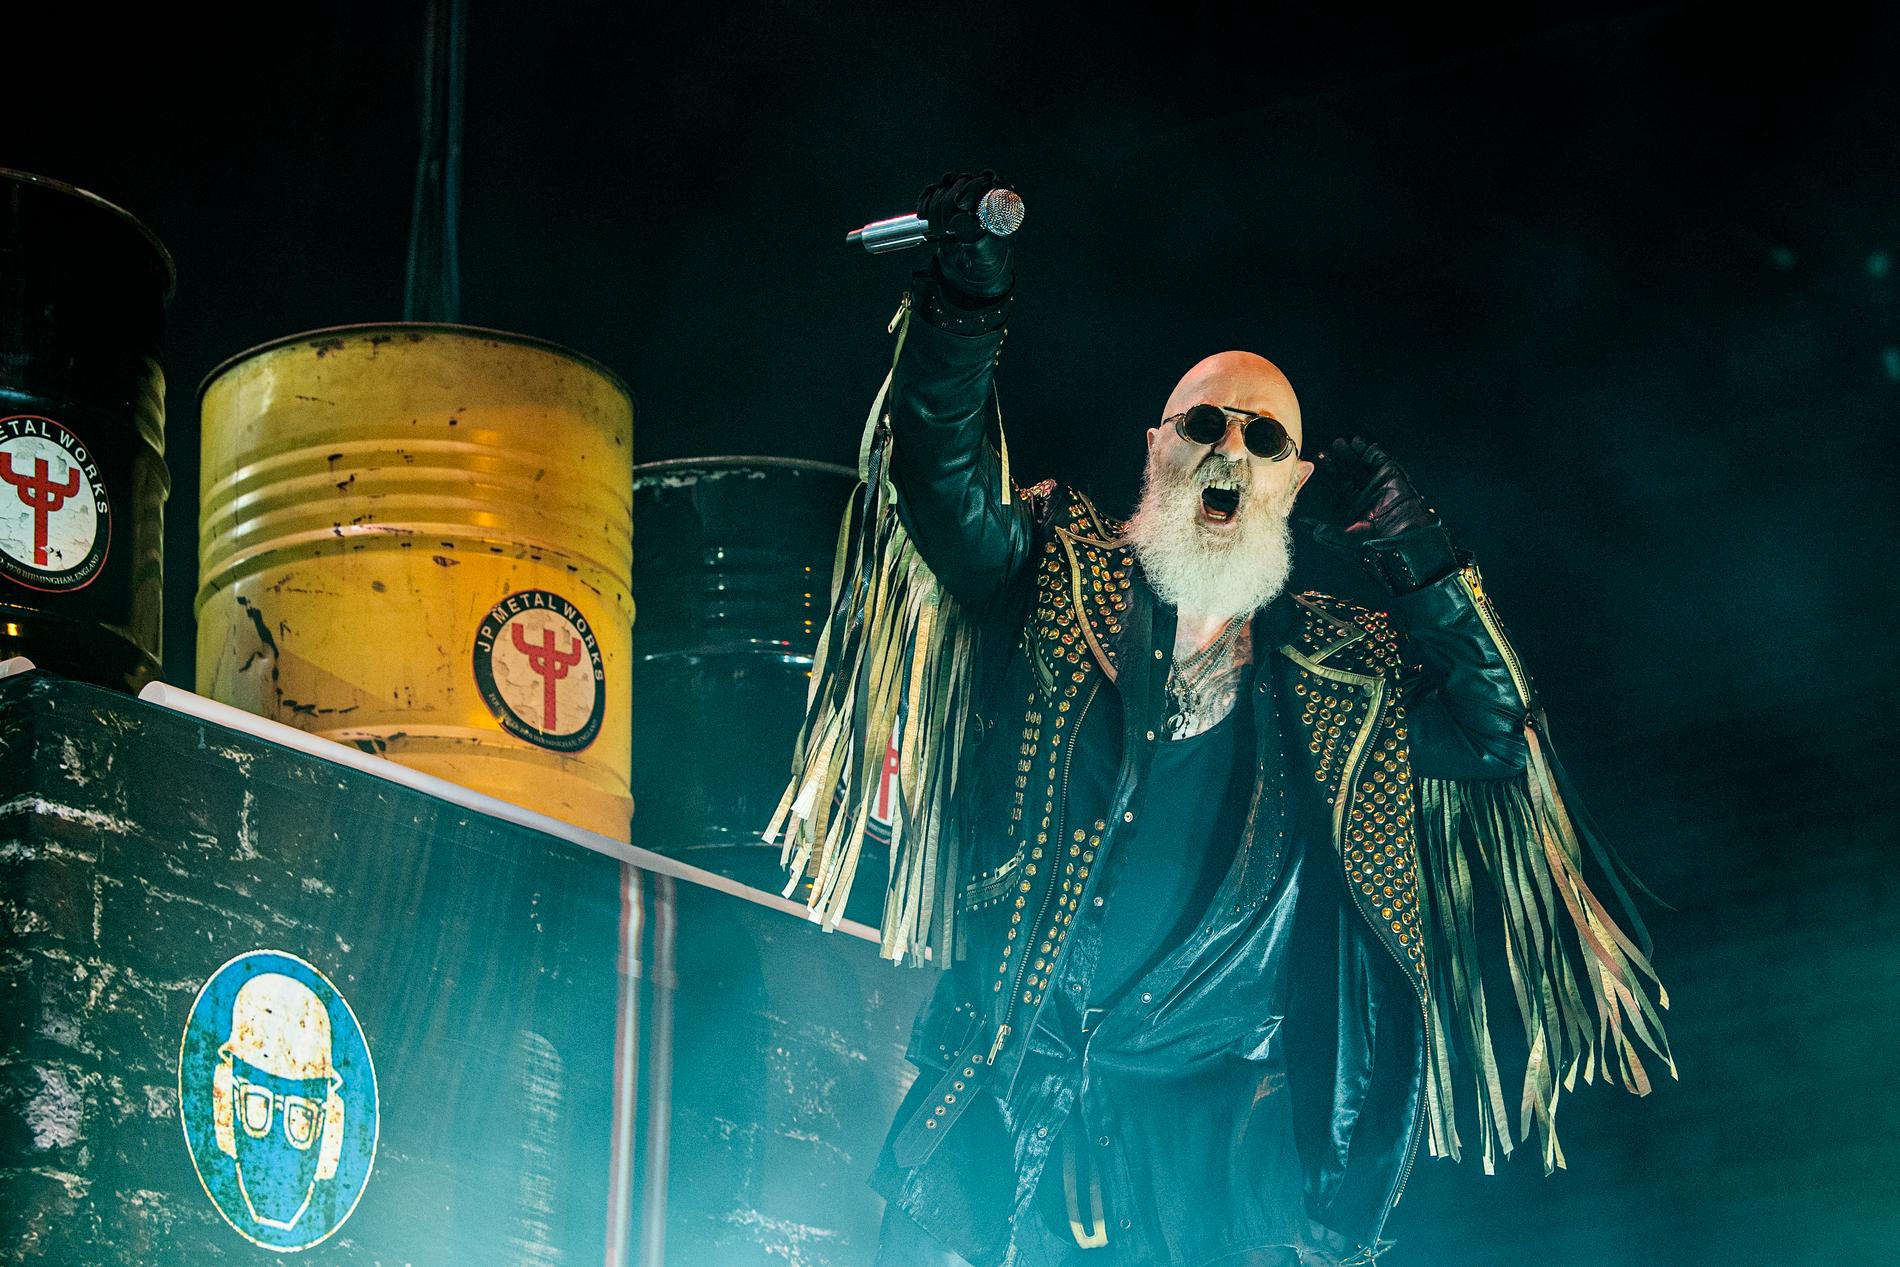 Framför ett scenbygge föreställande insidan av en fabrik tog Judas Priests sångare Rob Halford ibland omänskligt höga toner under söndagens spelning i Linköping.